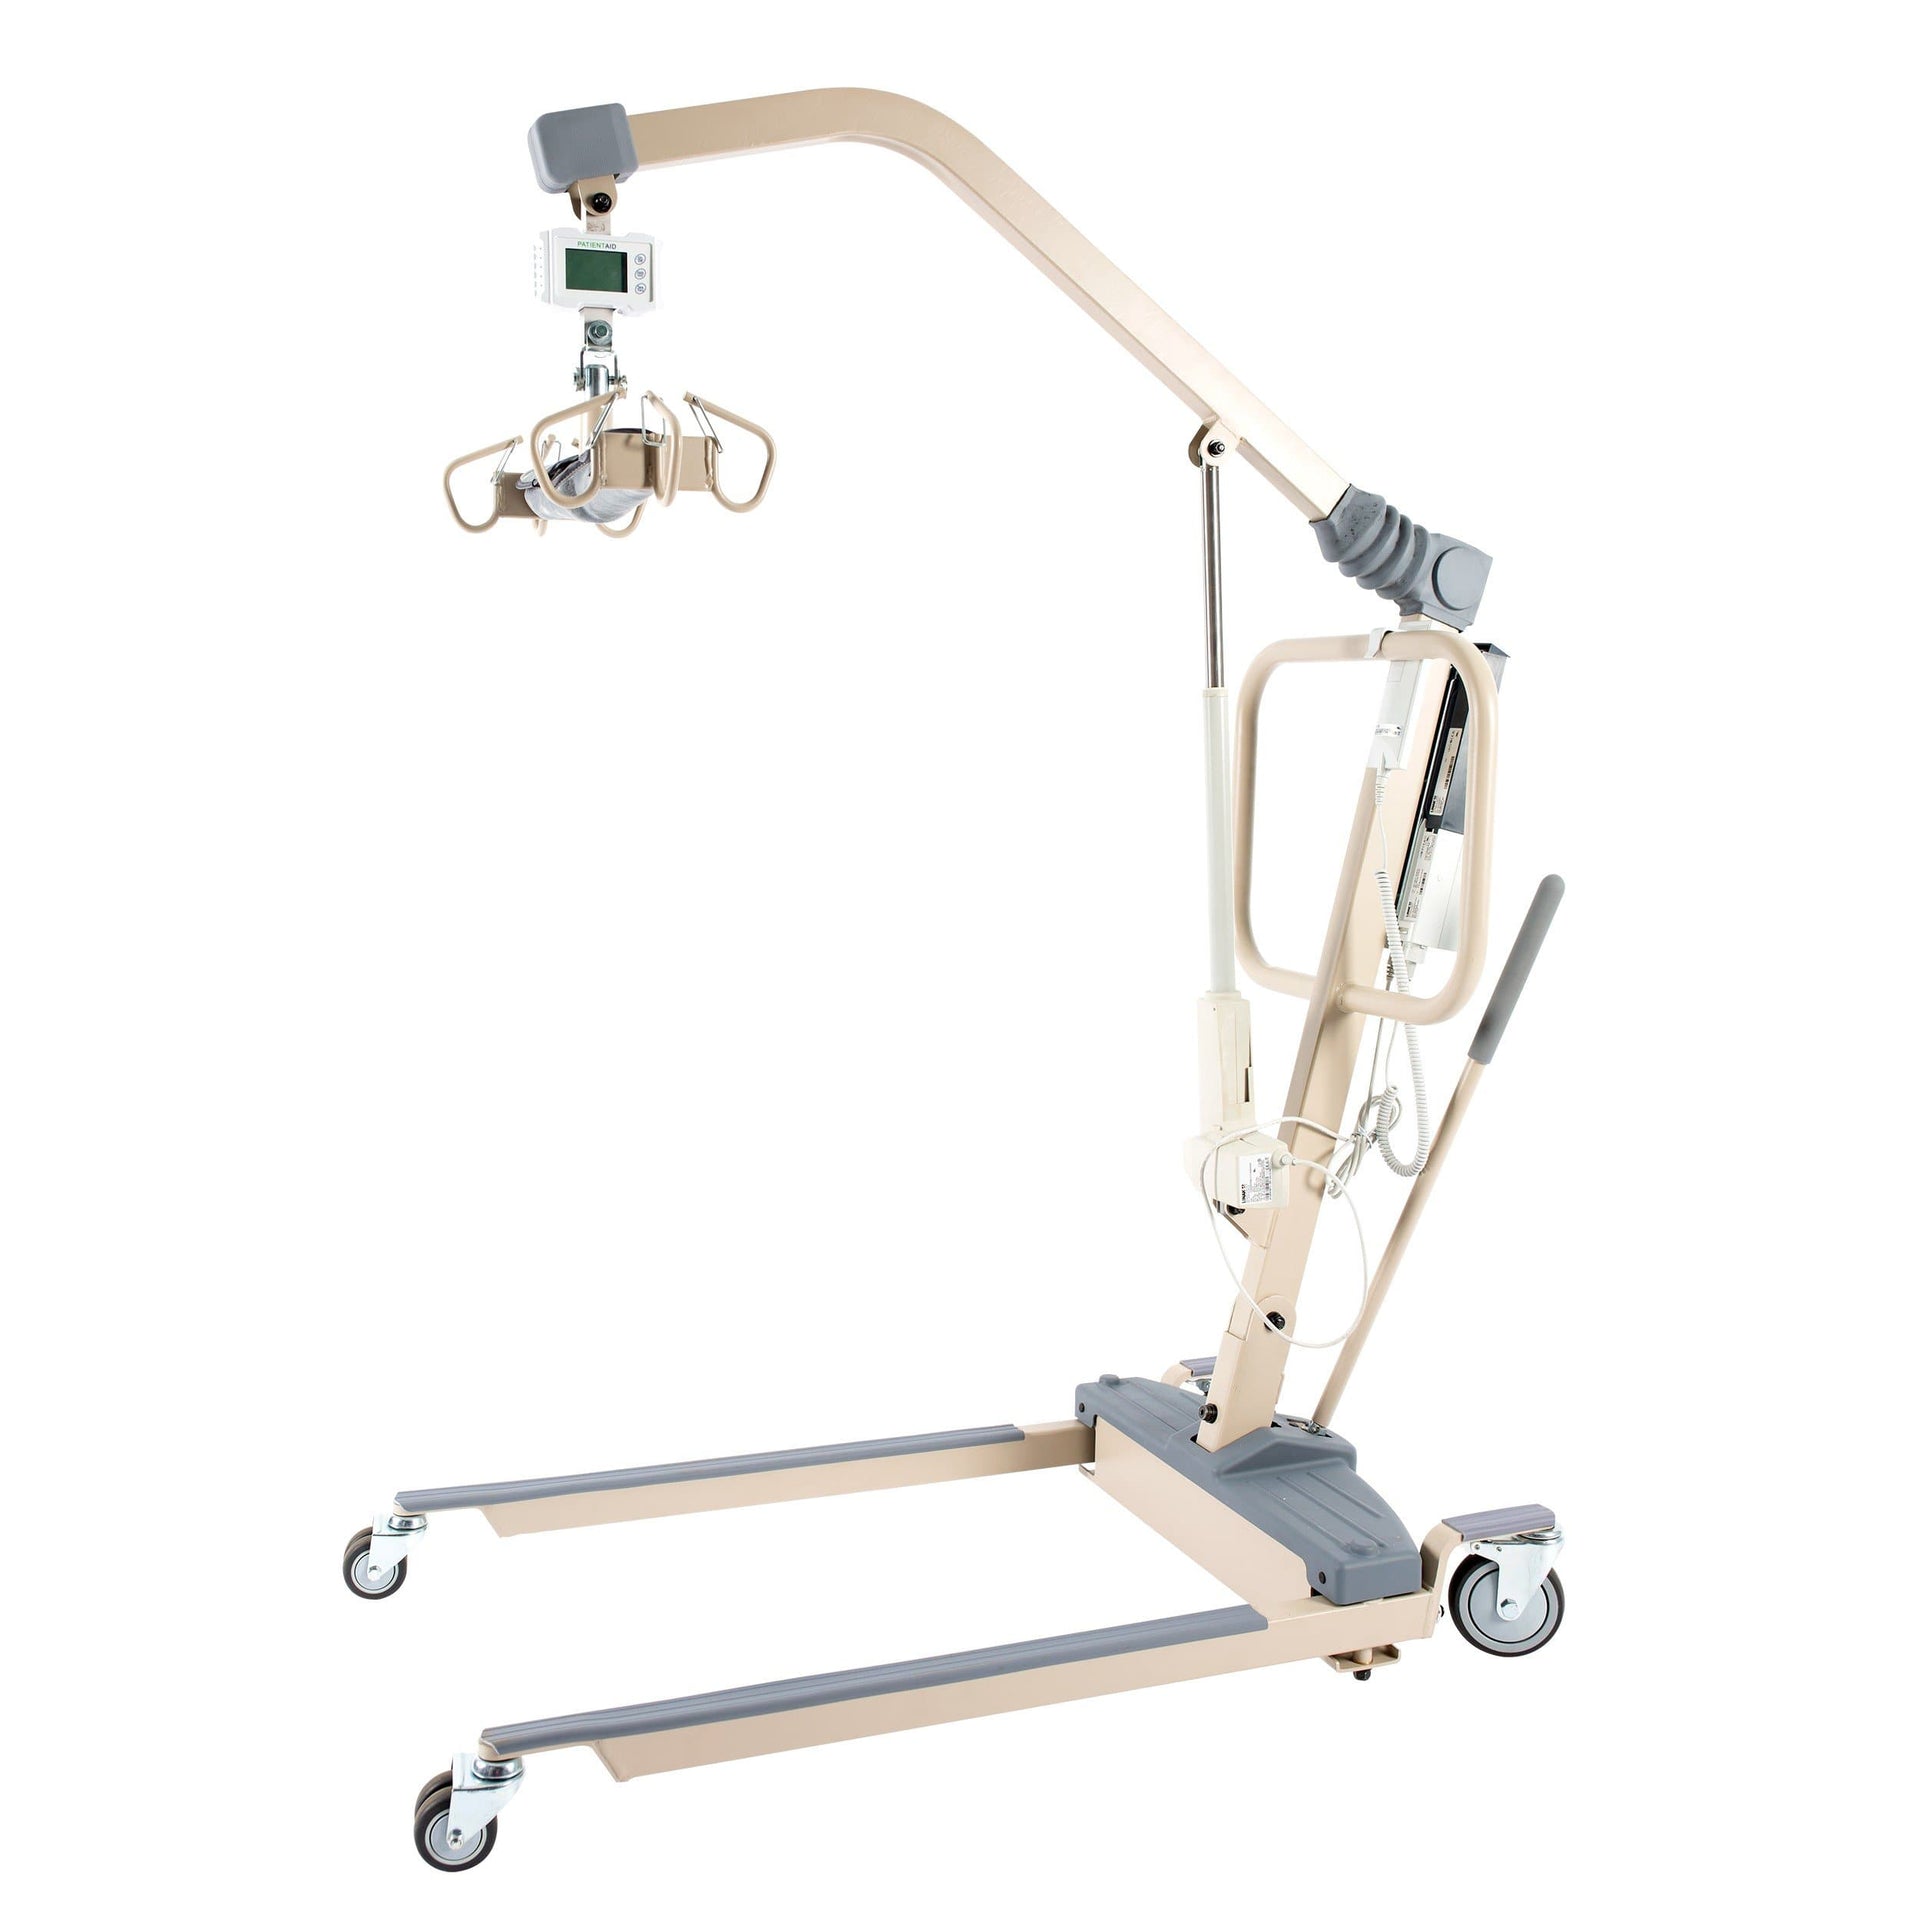 Dynarex Electric HD Bariatric Patient Lift - Perfect For Caregivers - 600 lb Cap - Senior.com Patient Lifts